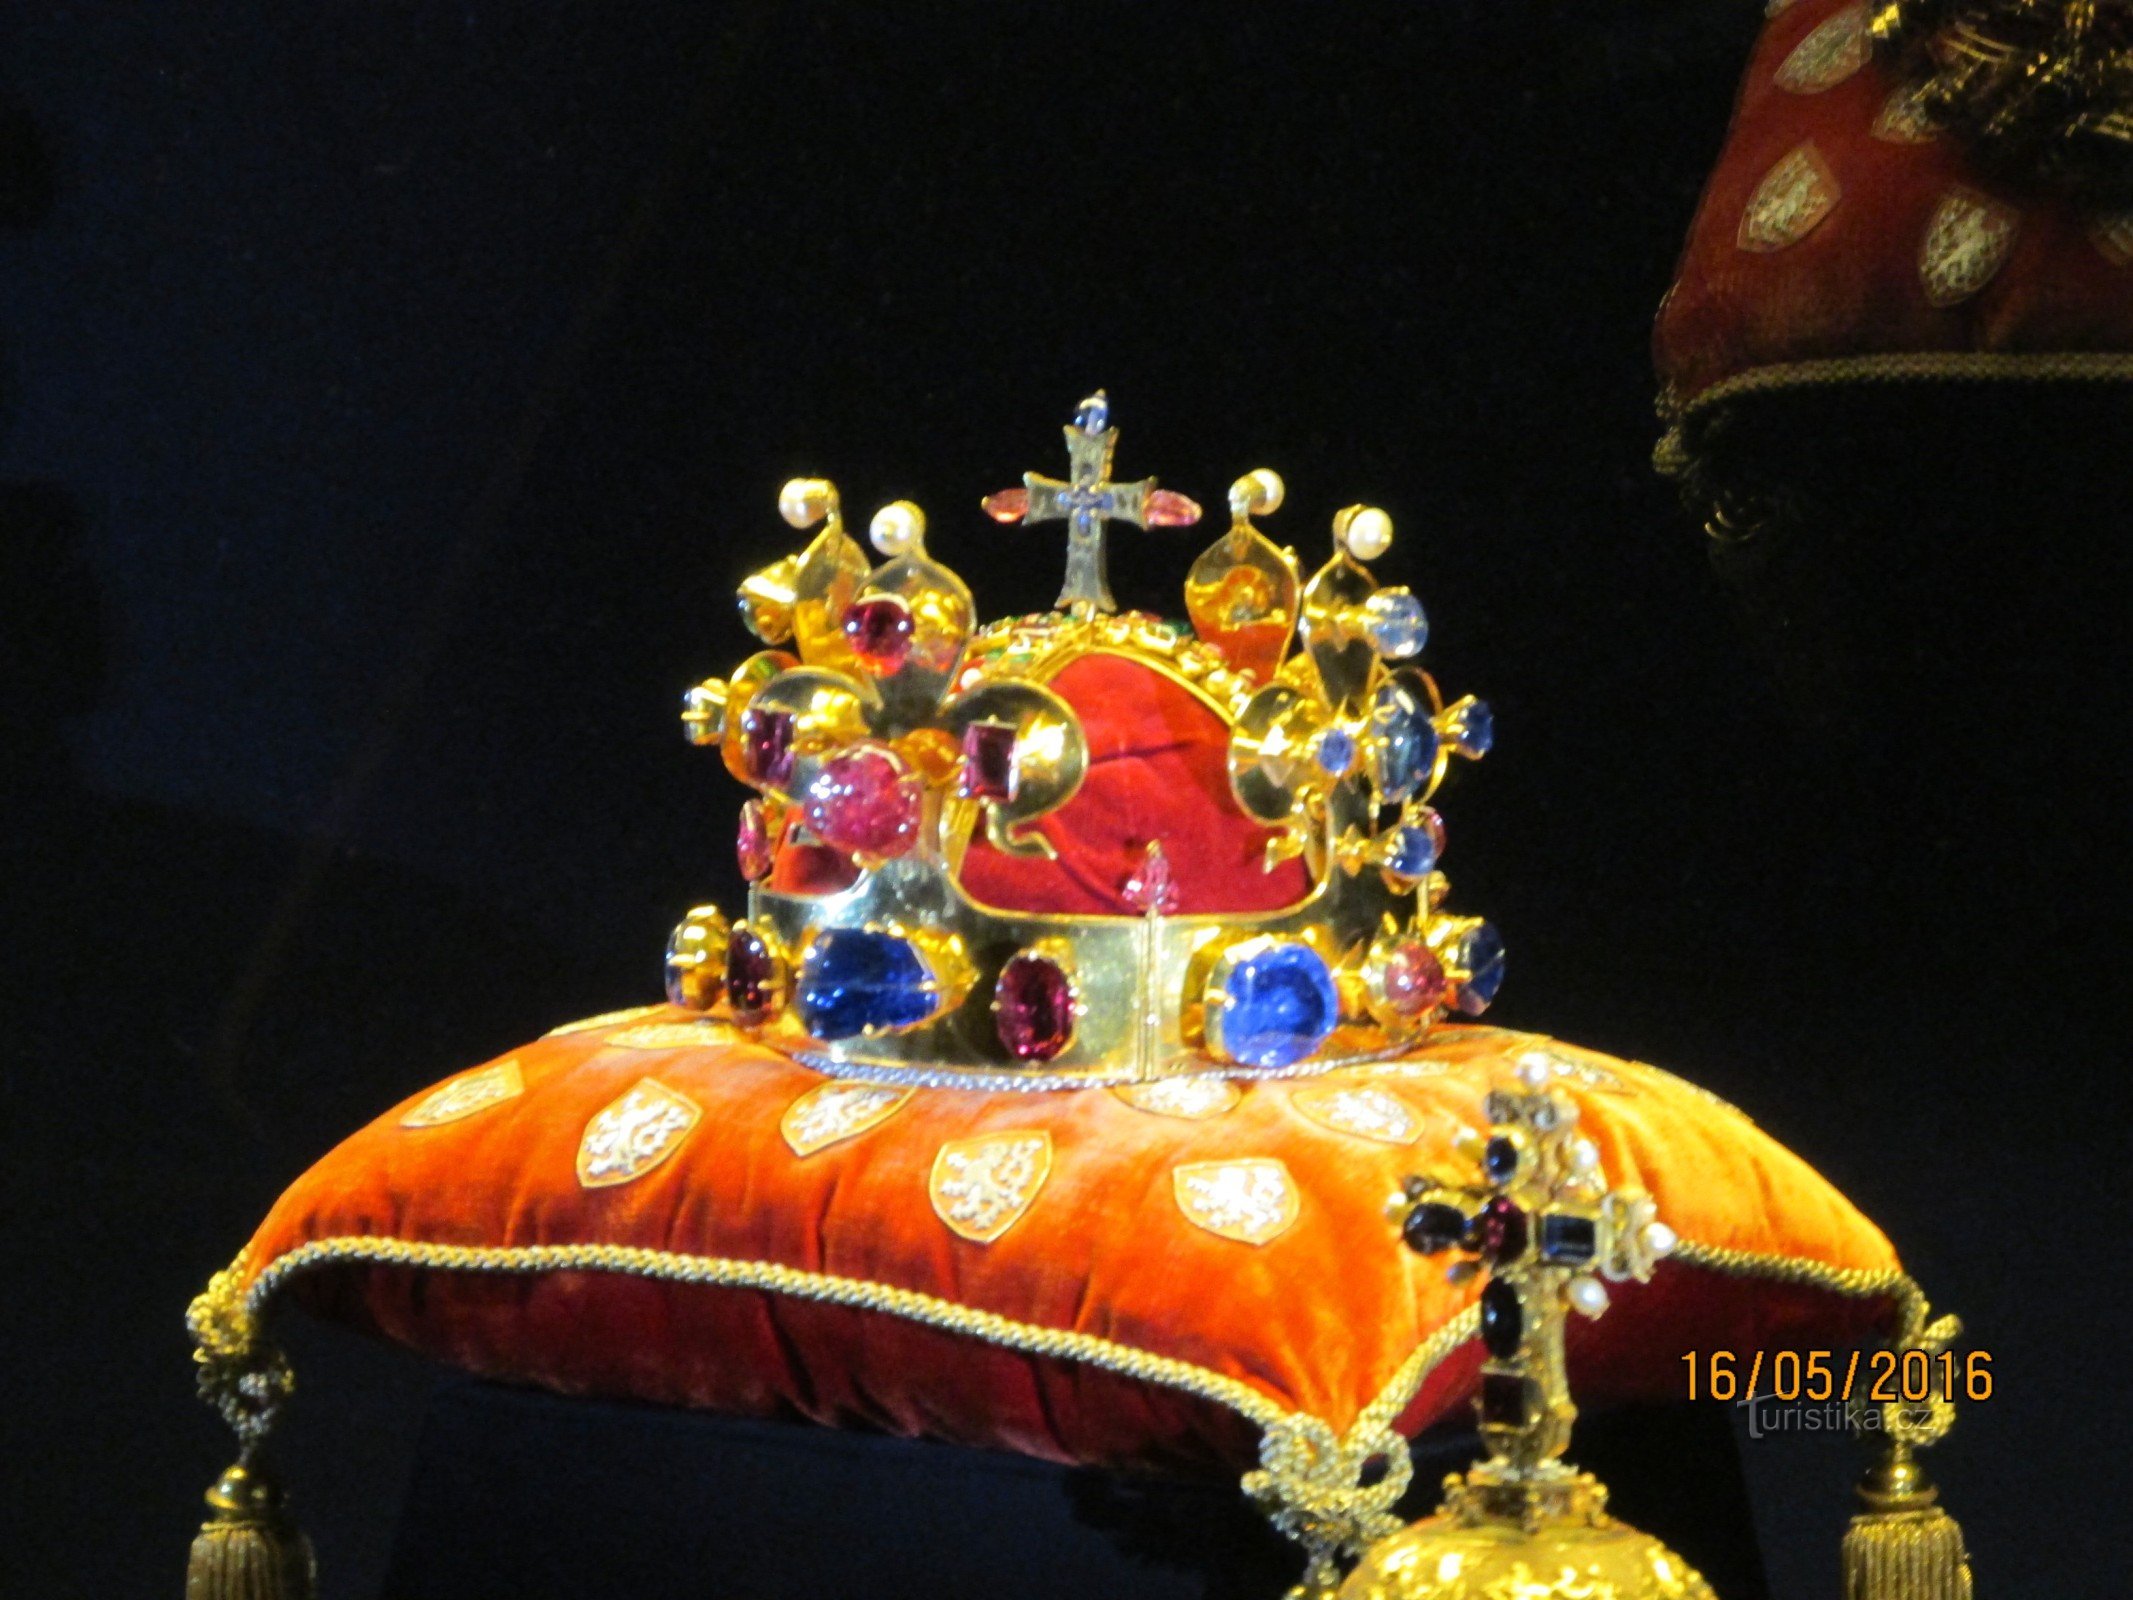 Luați trenul spre Praga pentru a vedea bijuteriile coroanei